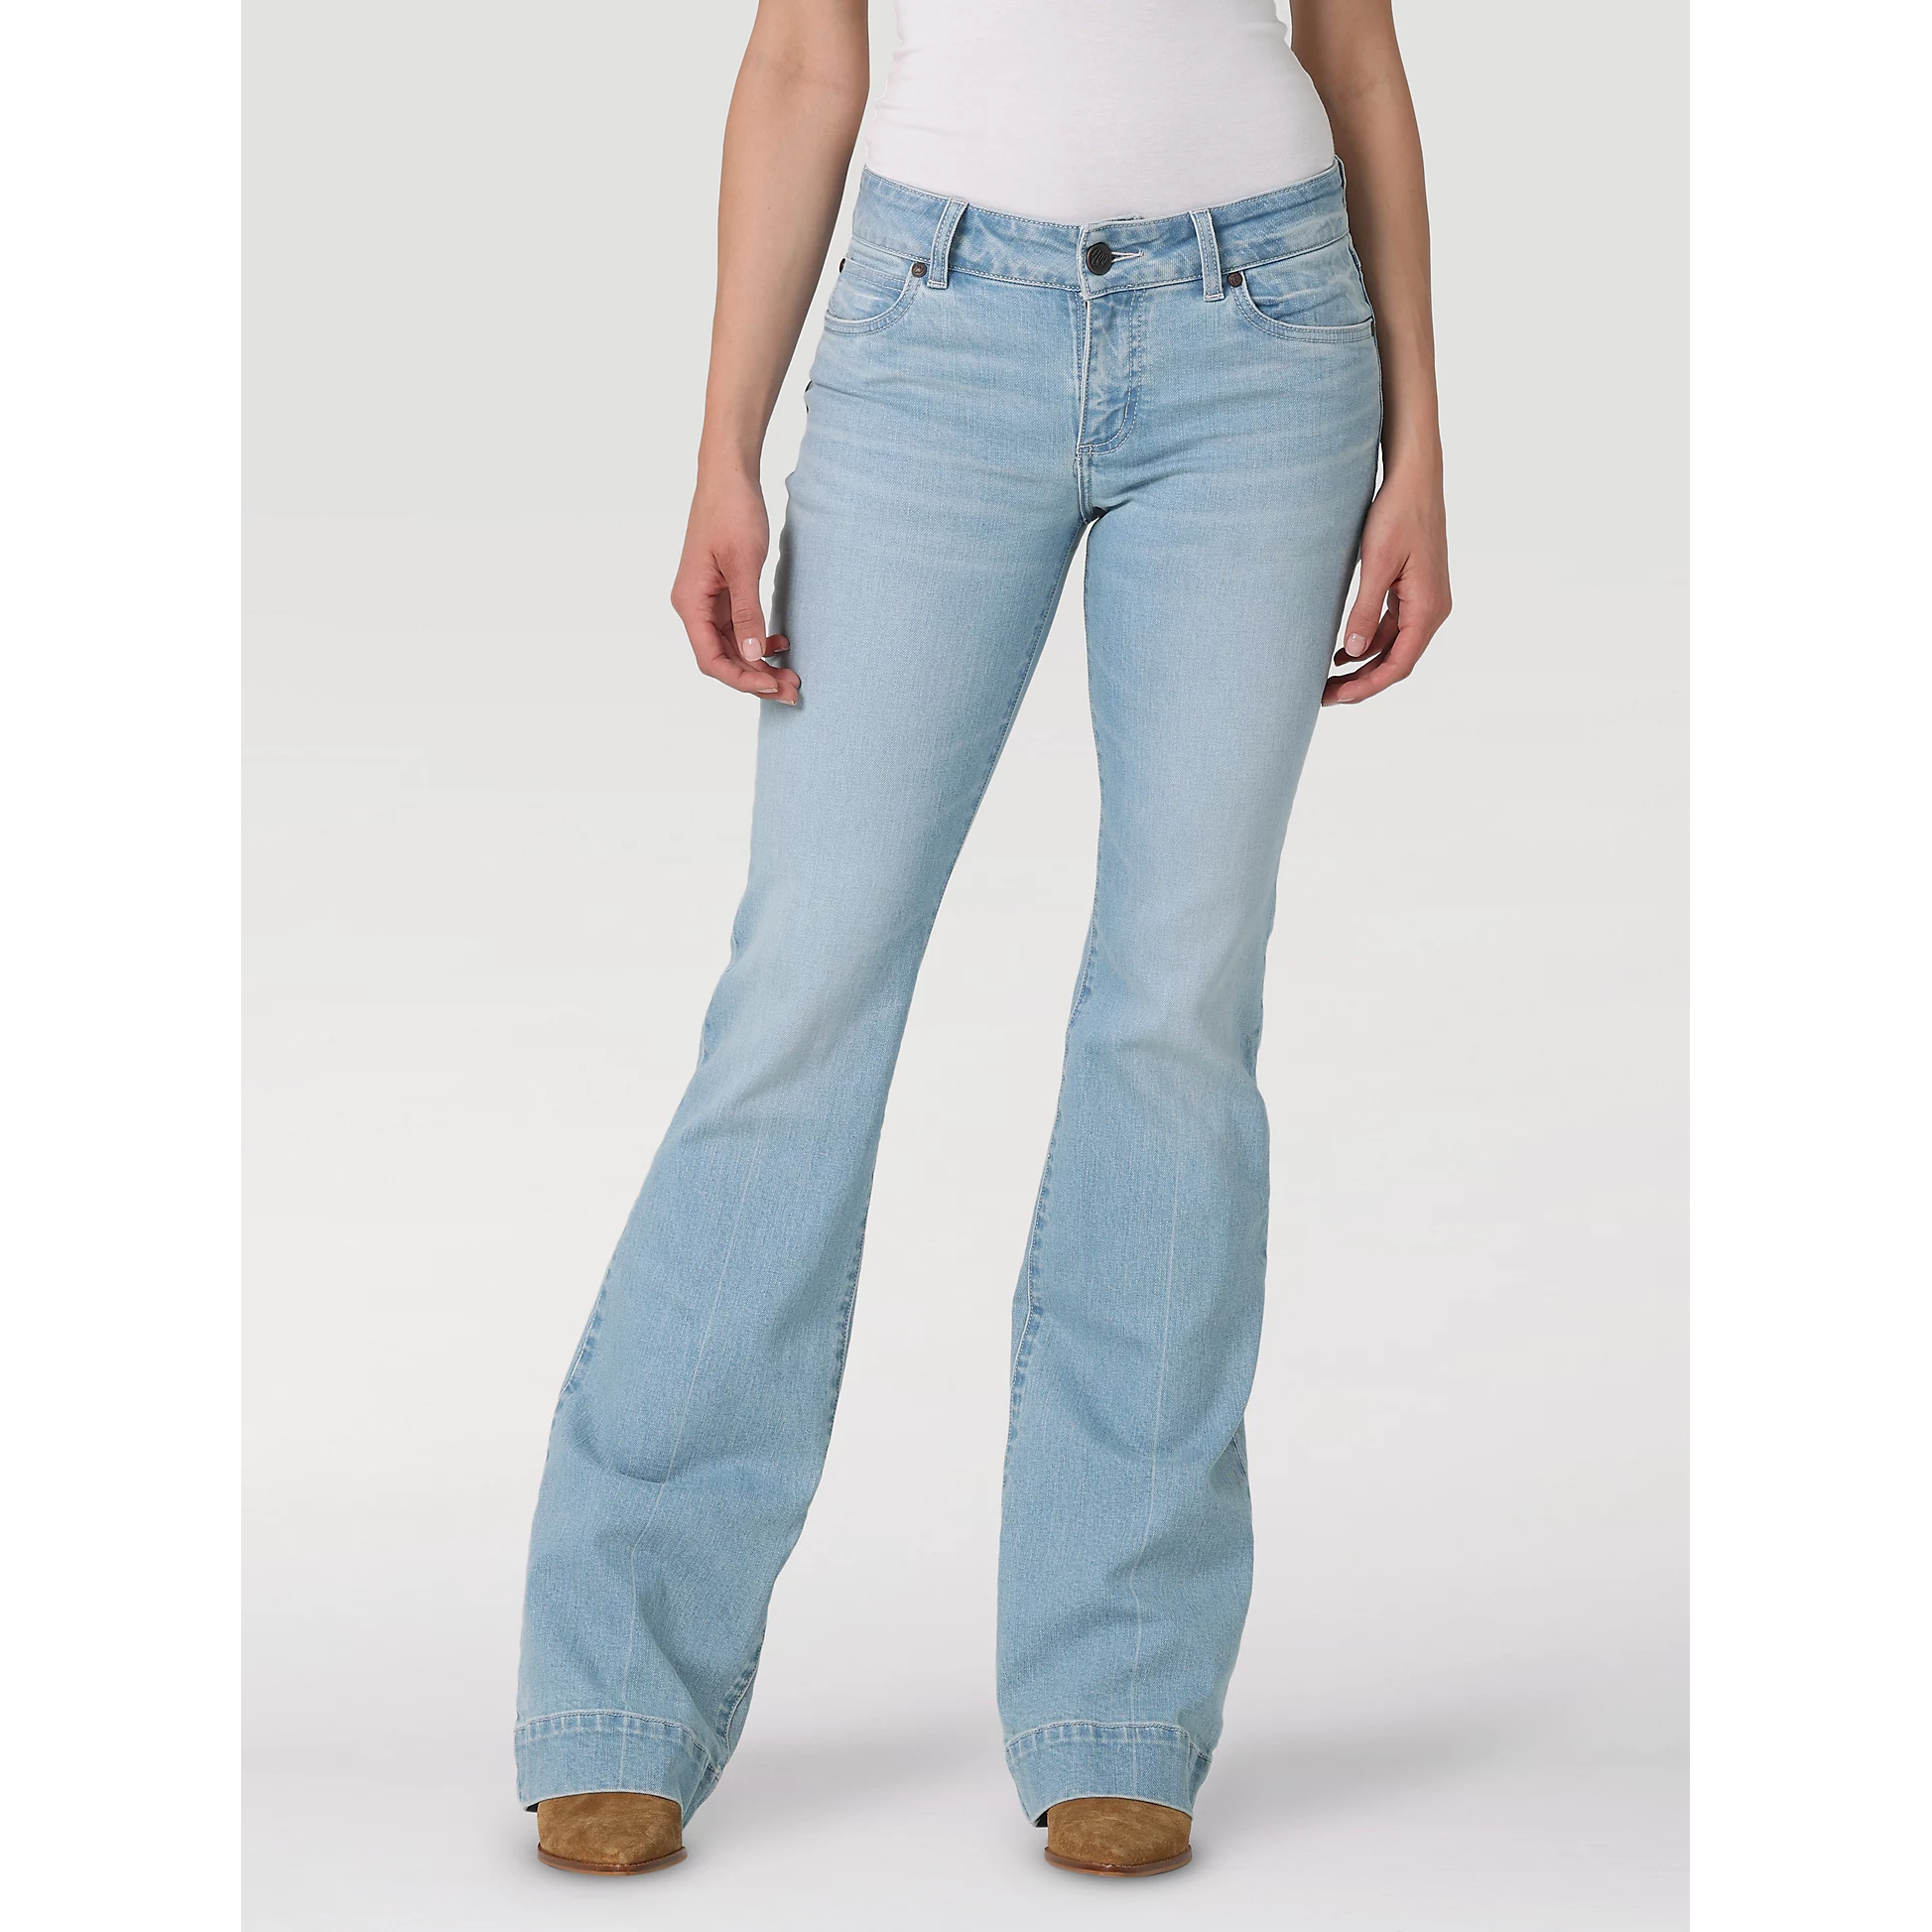 Wrangler Women's Retro Green Flare Leg Jeans 11MPFKP - Russell's Western  Wear, Inc.